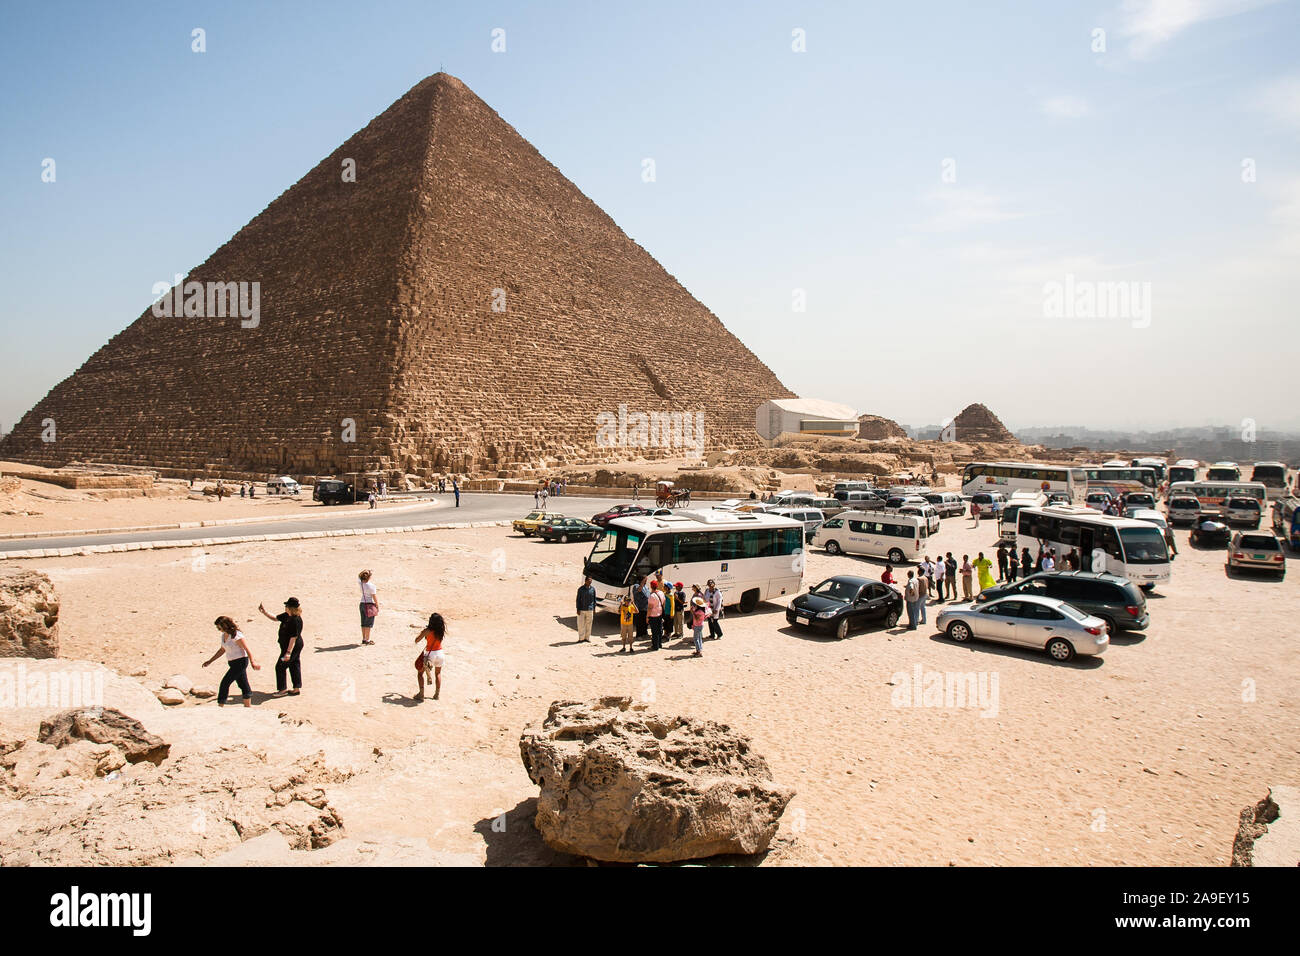 Gizeh, Kairo, Ägypten, 2. Mai 2008: Die Pyramide des Cheops (die Große Pyramide von Gizeh) thront über Touristen und einem vollen Parkplatz auf der Giza Plateau. Stockfoto